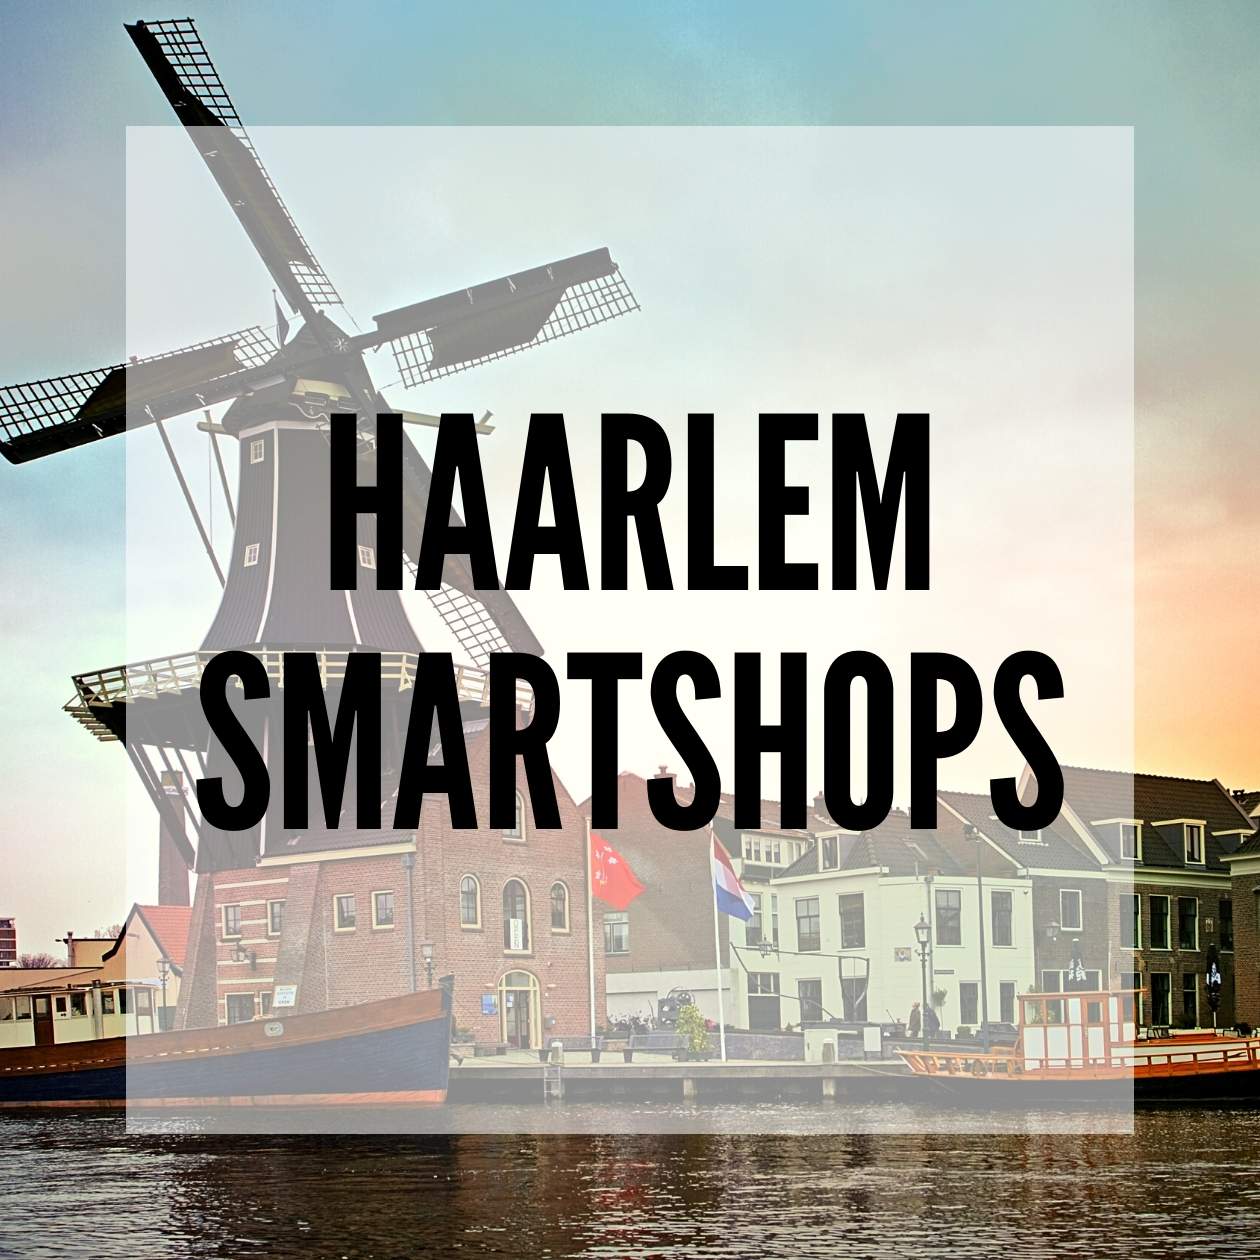 Haarlem Smartshops